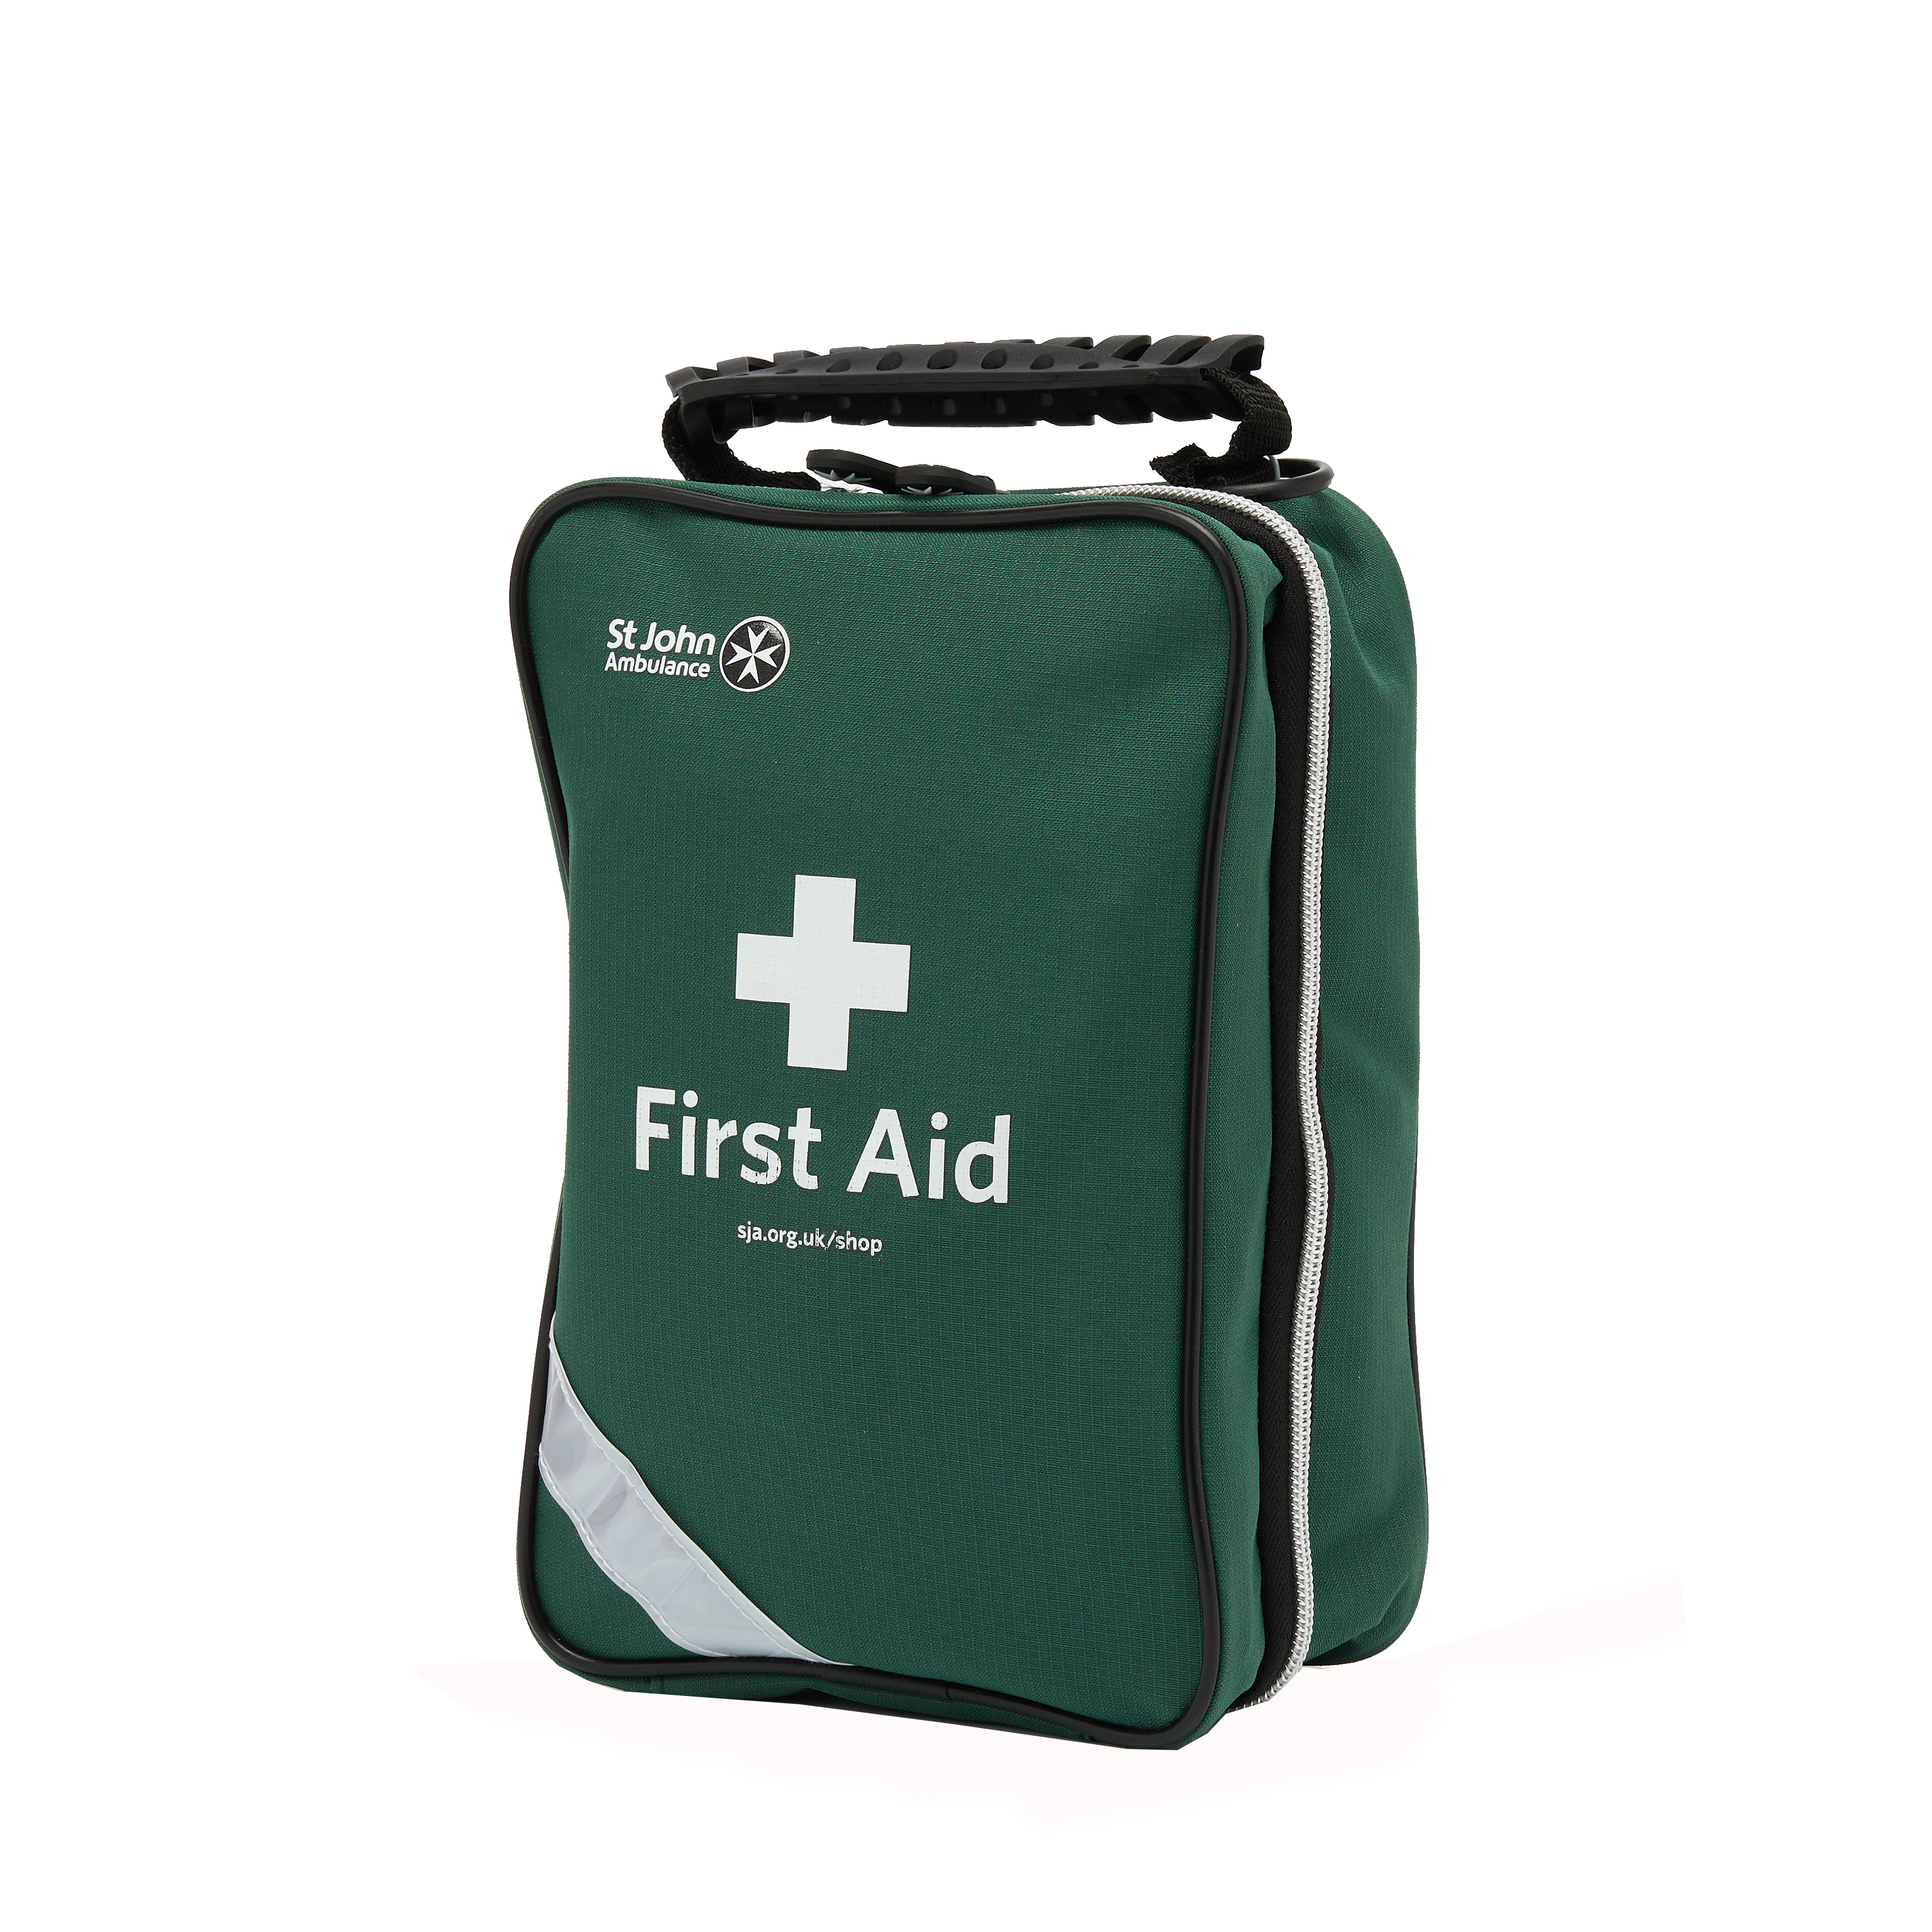 St John Ambulance Medium Workplace First Aid Kit Grab Bag BS-8599-1:2019